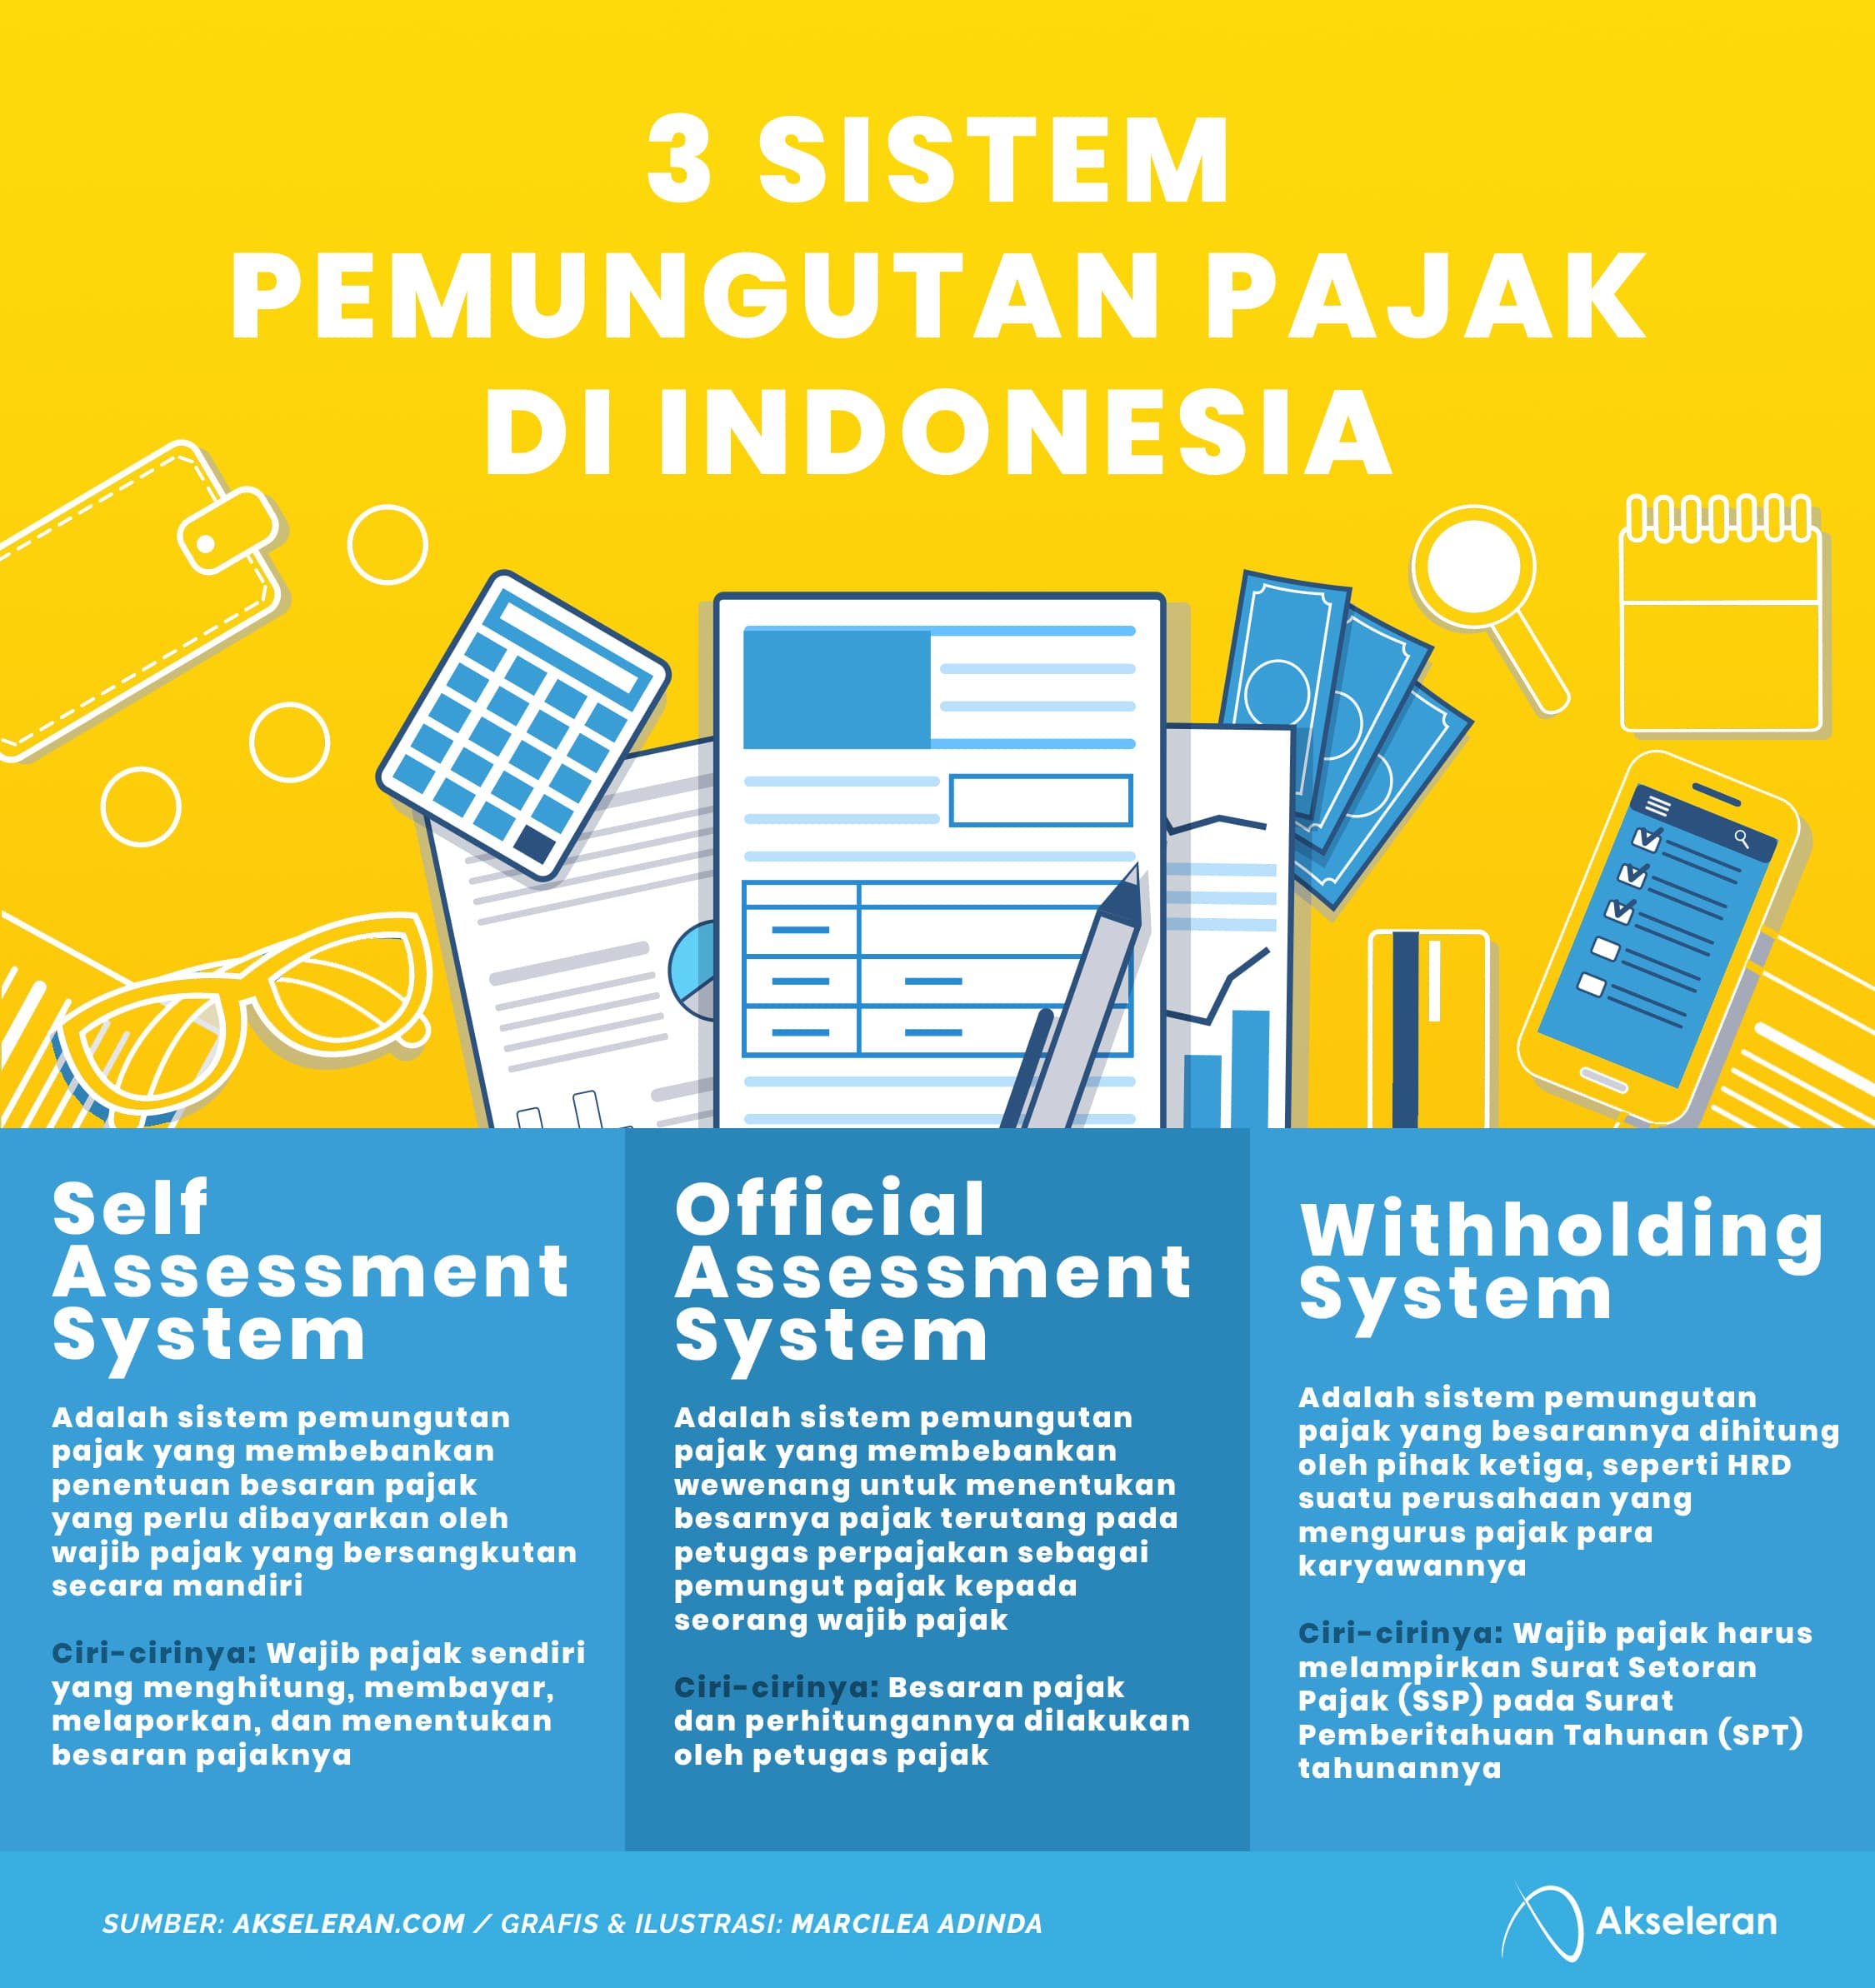 Berikut yang dimaksud dengan self assessment system sebagai salah satu sistem pemungutan pajak di indonesia adalah